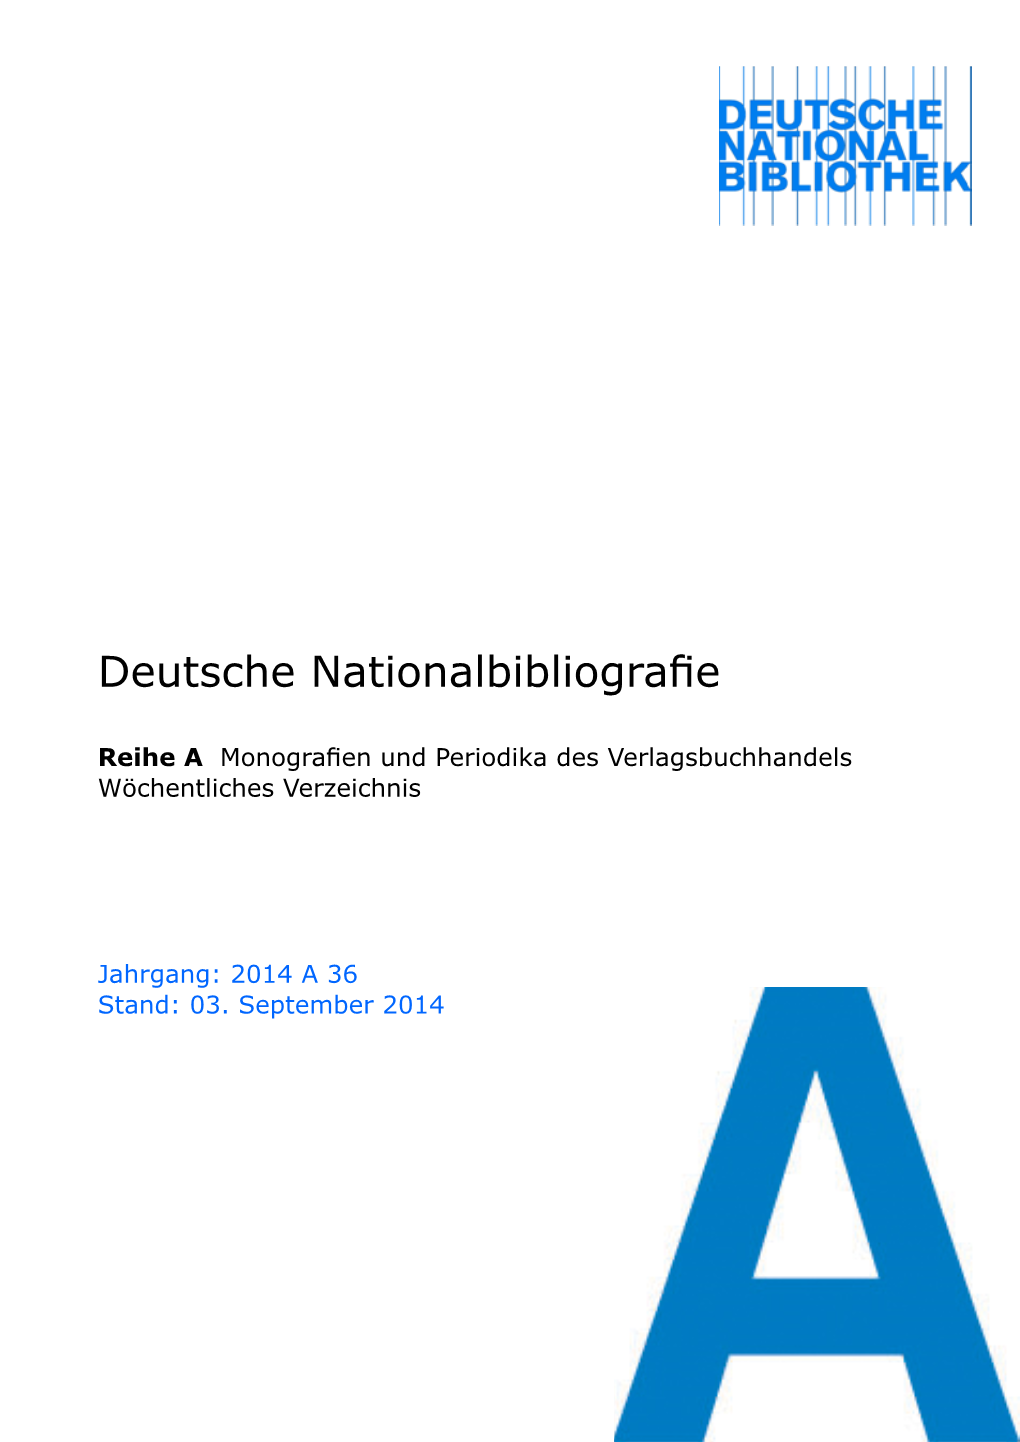 Deutsche Nationalbibliografie 2014 a 36